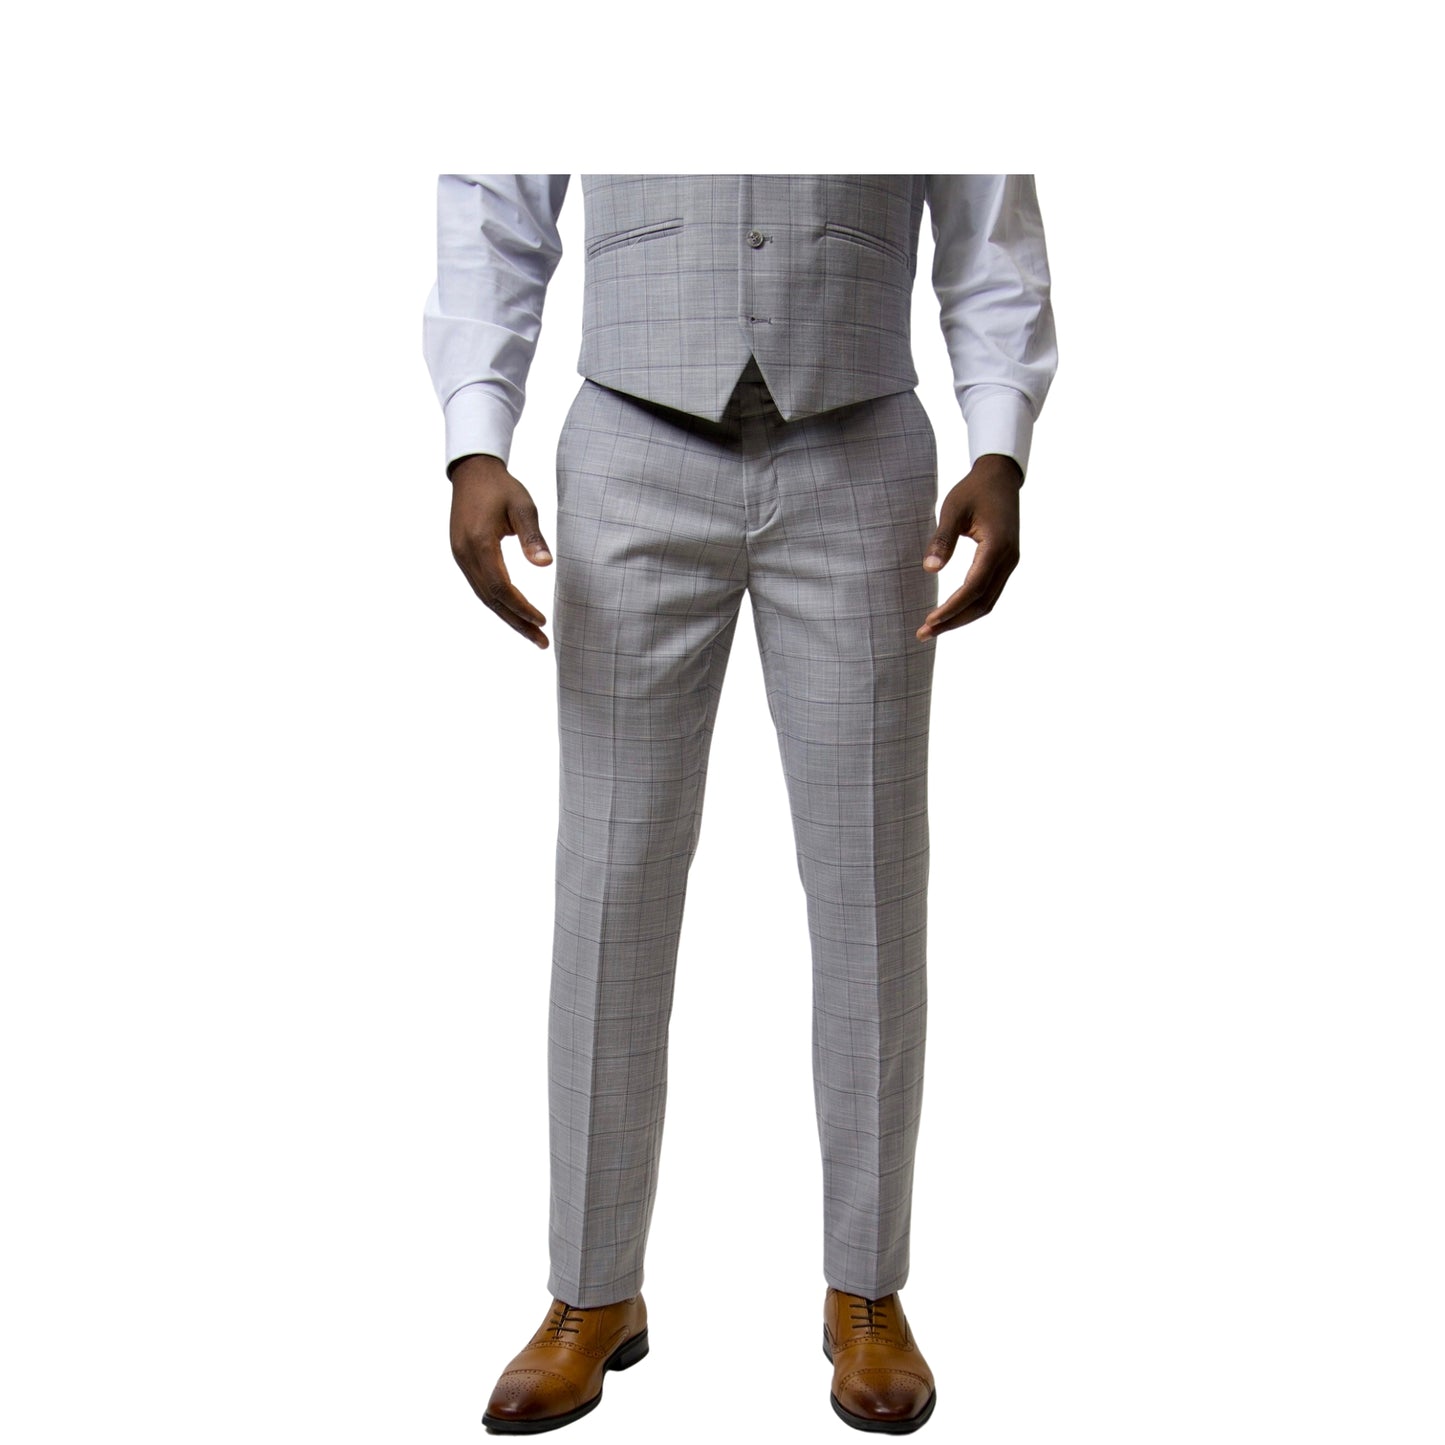 2Bvf100-Lr7001-21 Plaid Pino Baldini Vested Plaid Slim Fit Suits